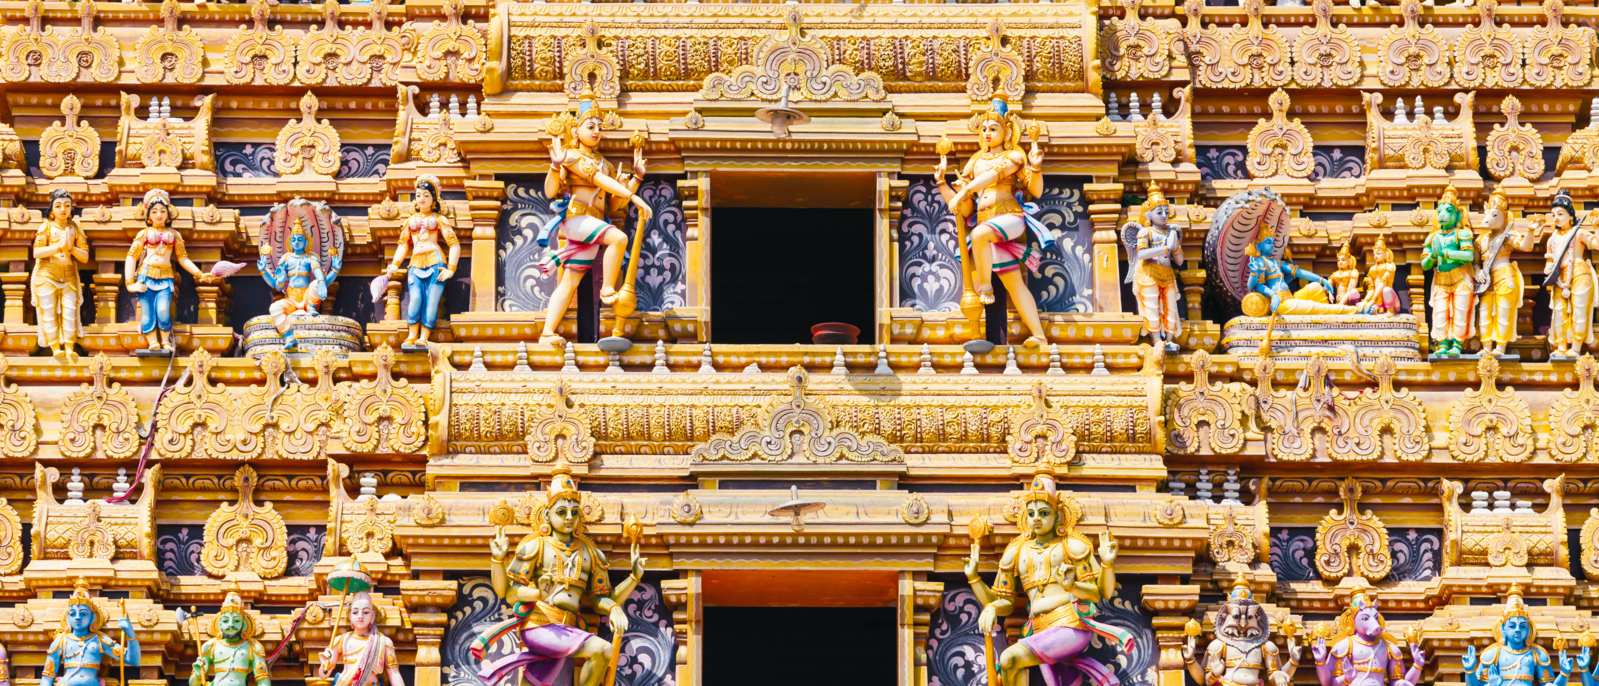 Vallipuram Alvar or Valipura Aalvar Vishnu Kovil is a hindu temple near Jaffna, Sri Lanka